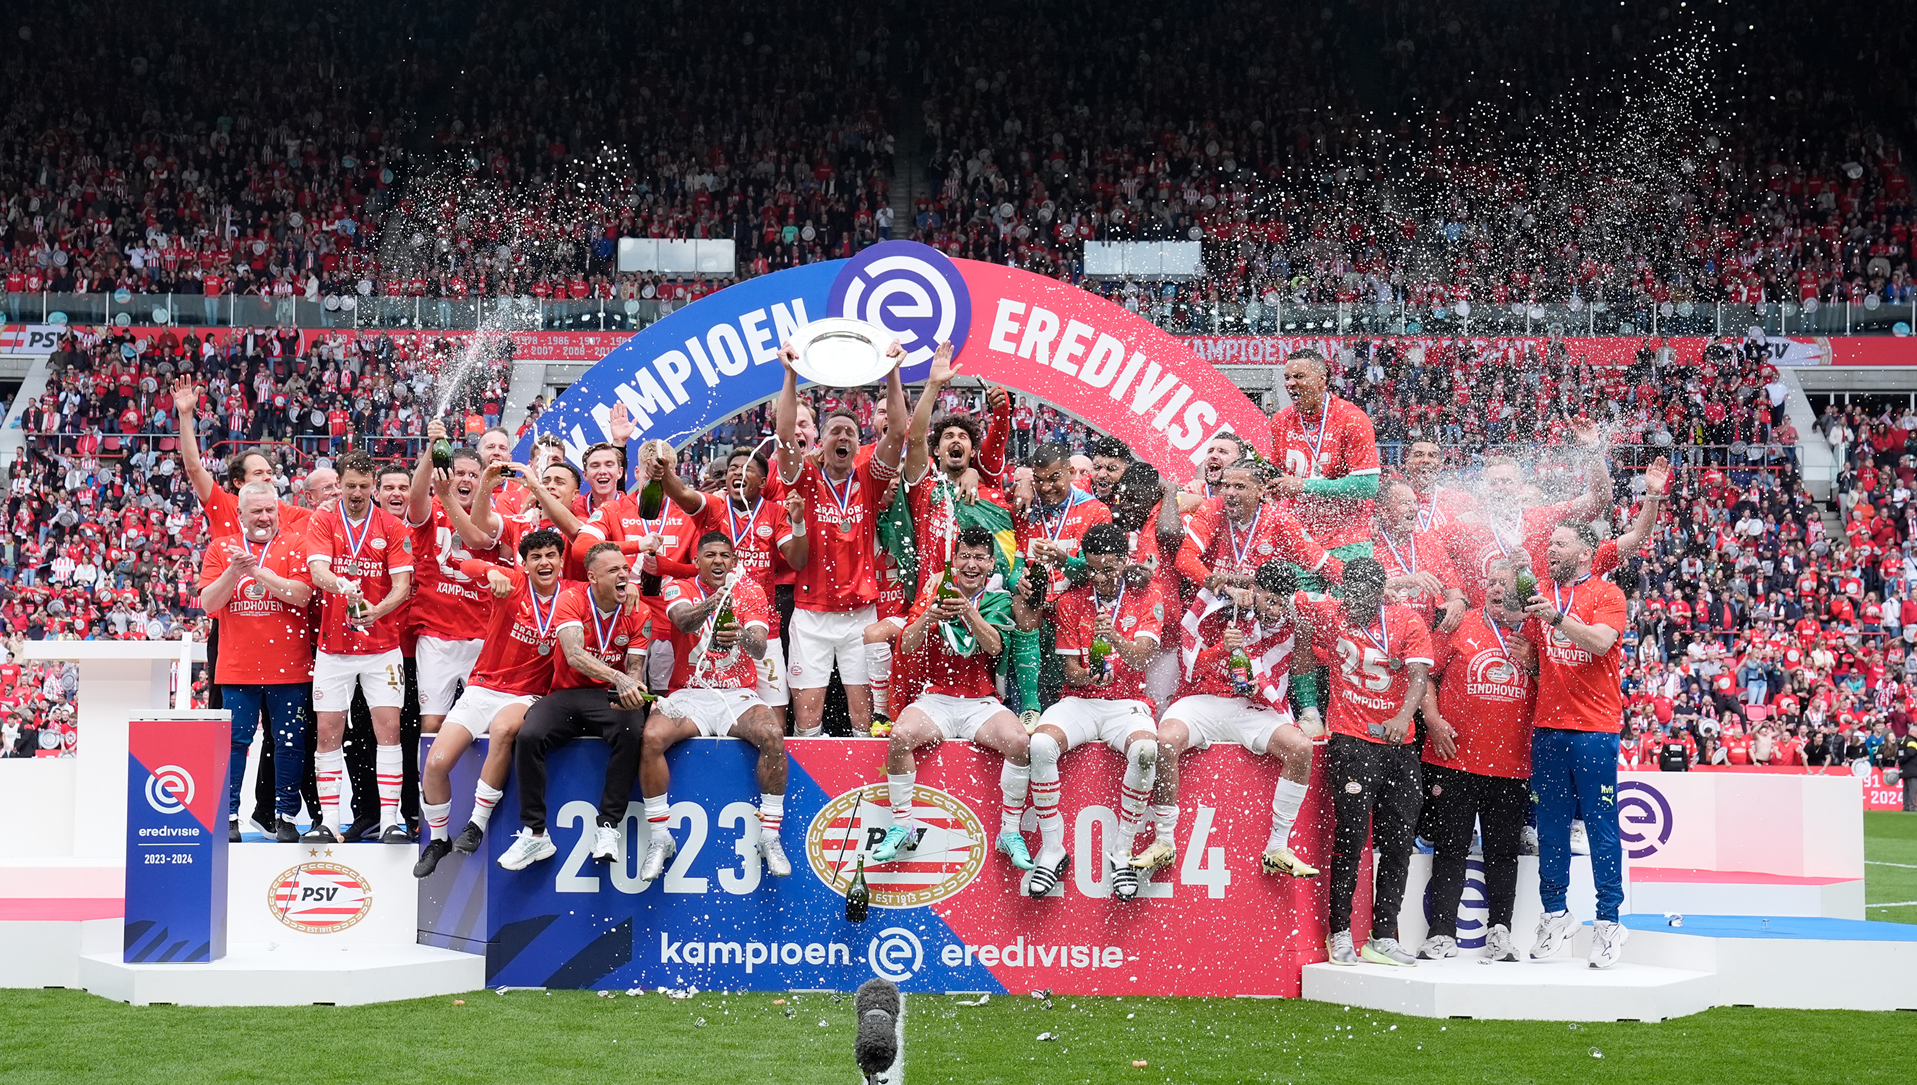 PSV - Landskampioen | De records van het kampioensjaar 2023-2024